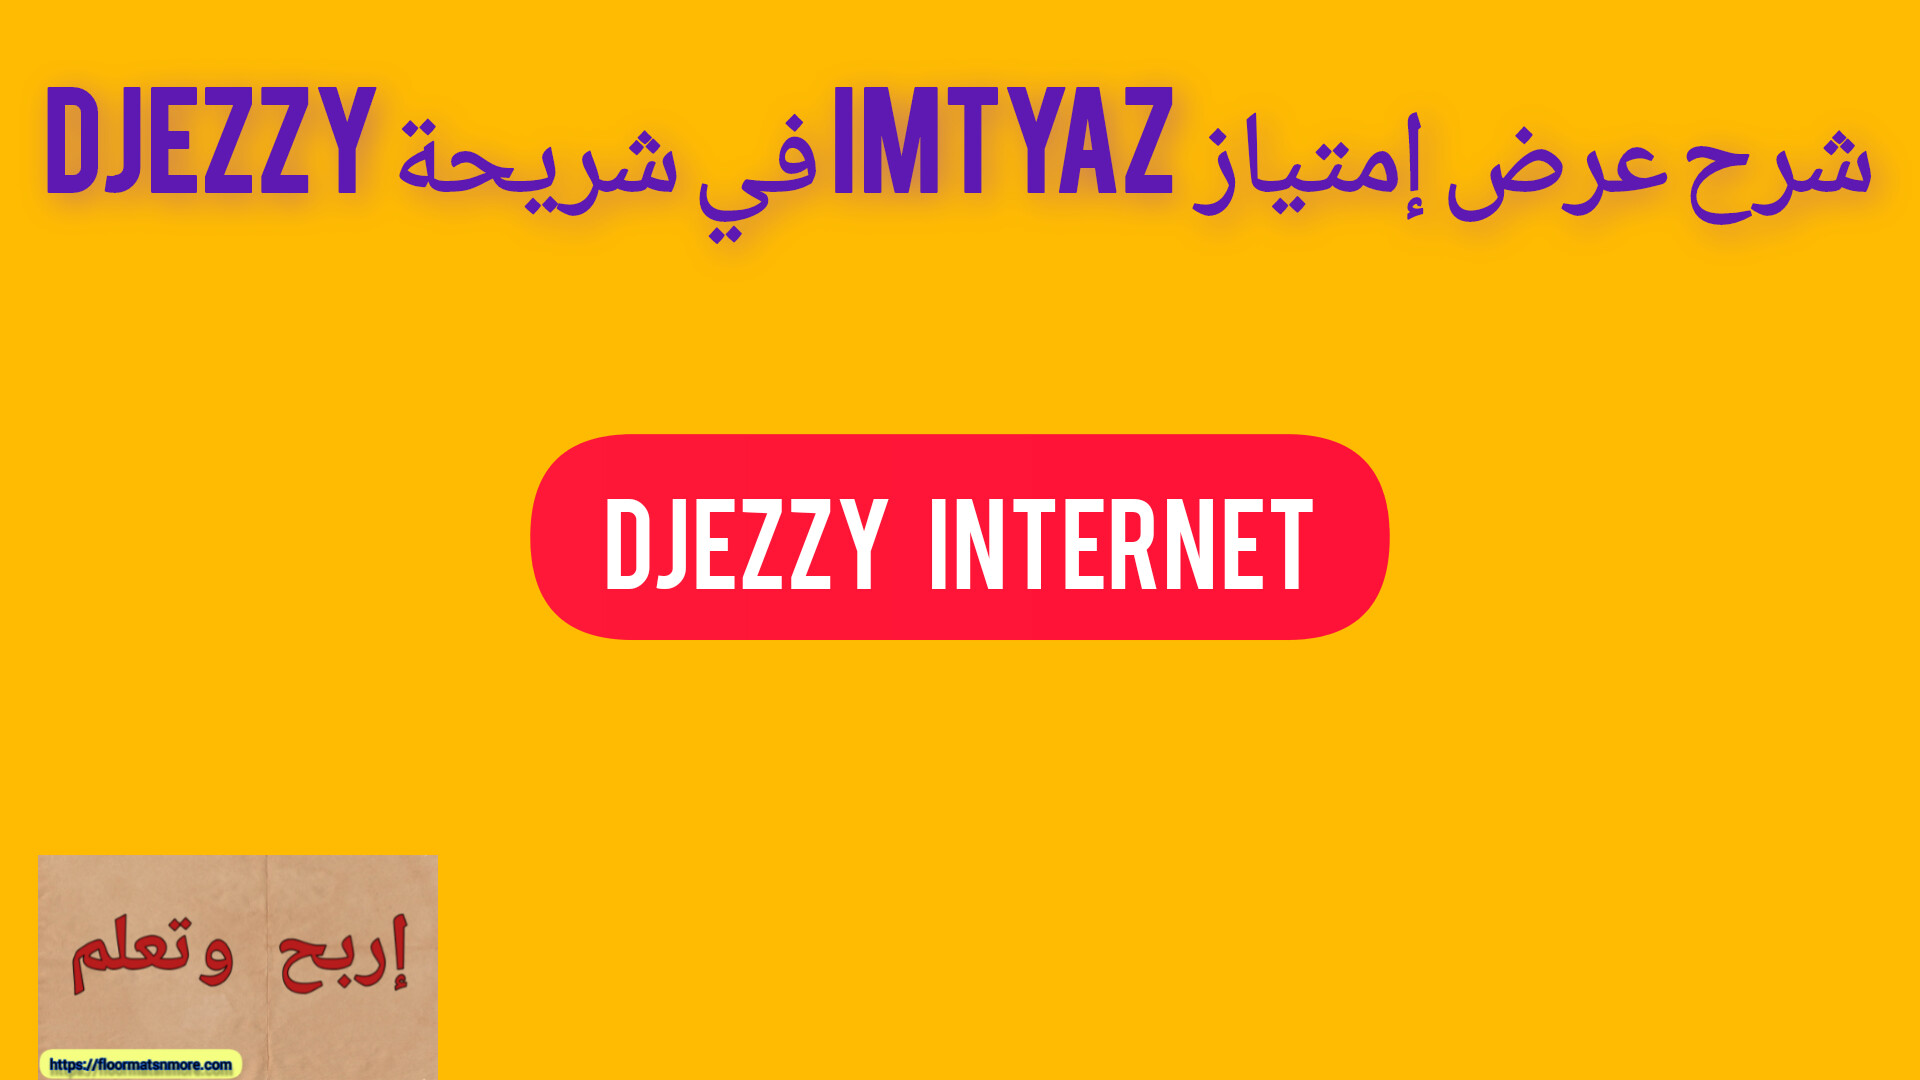 شرح عرض إمتياز  Imtyaz في شريحة djezzy